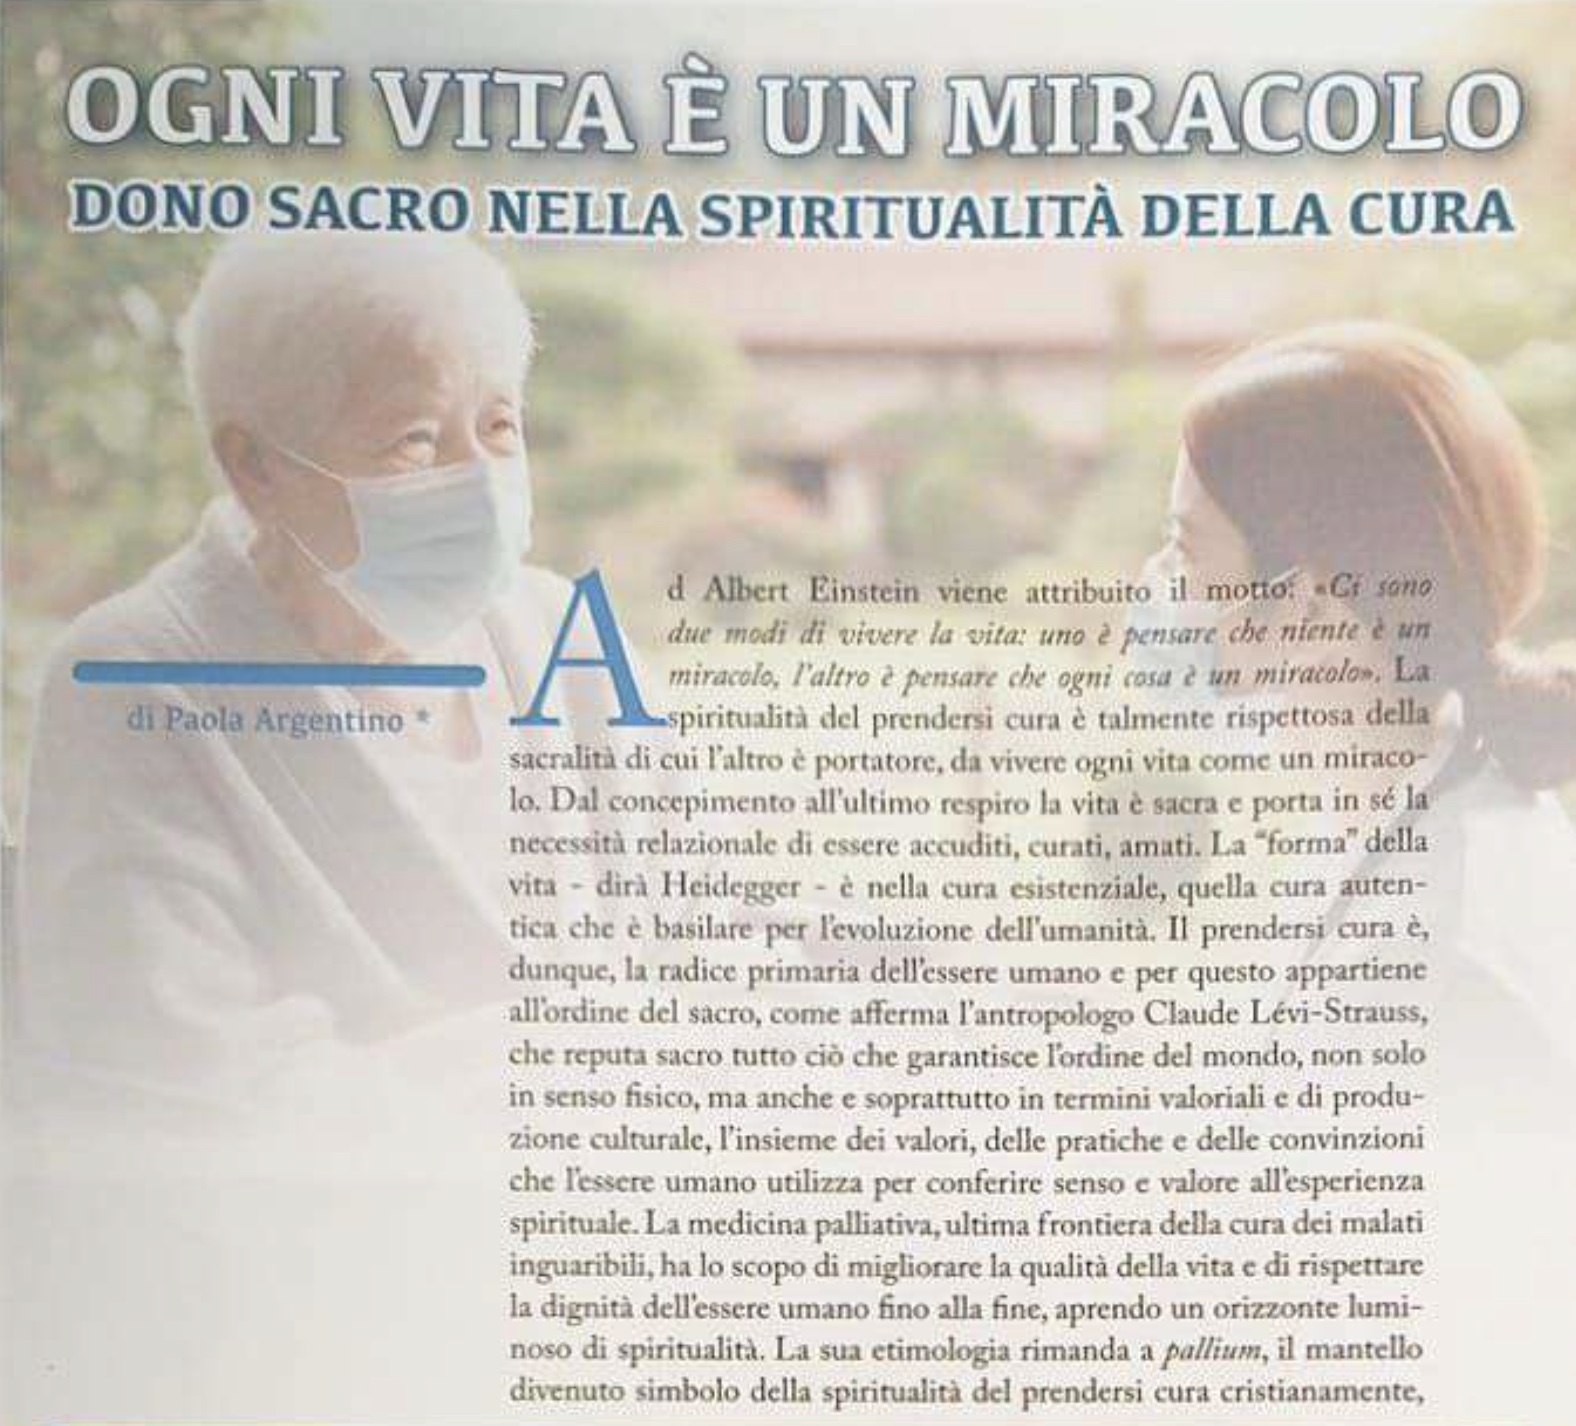 Ogni vita è un miracolo: dono sacro nella spiritualità della cura